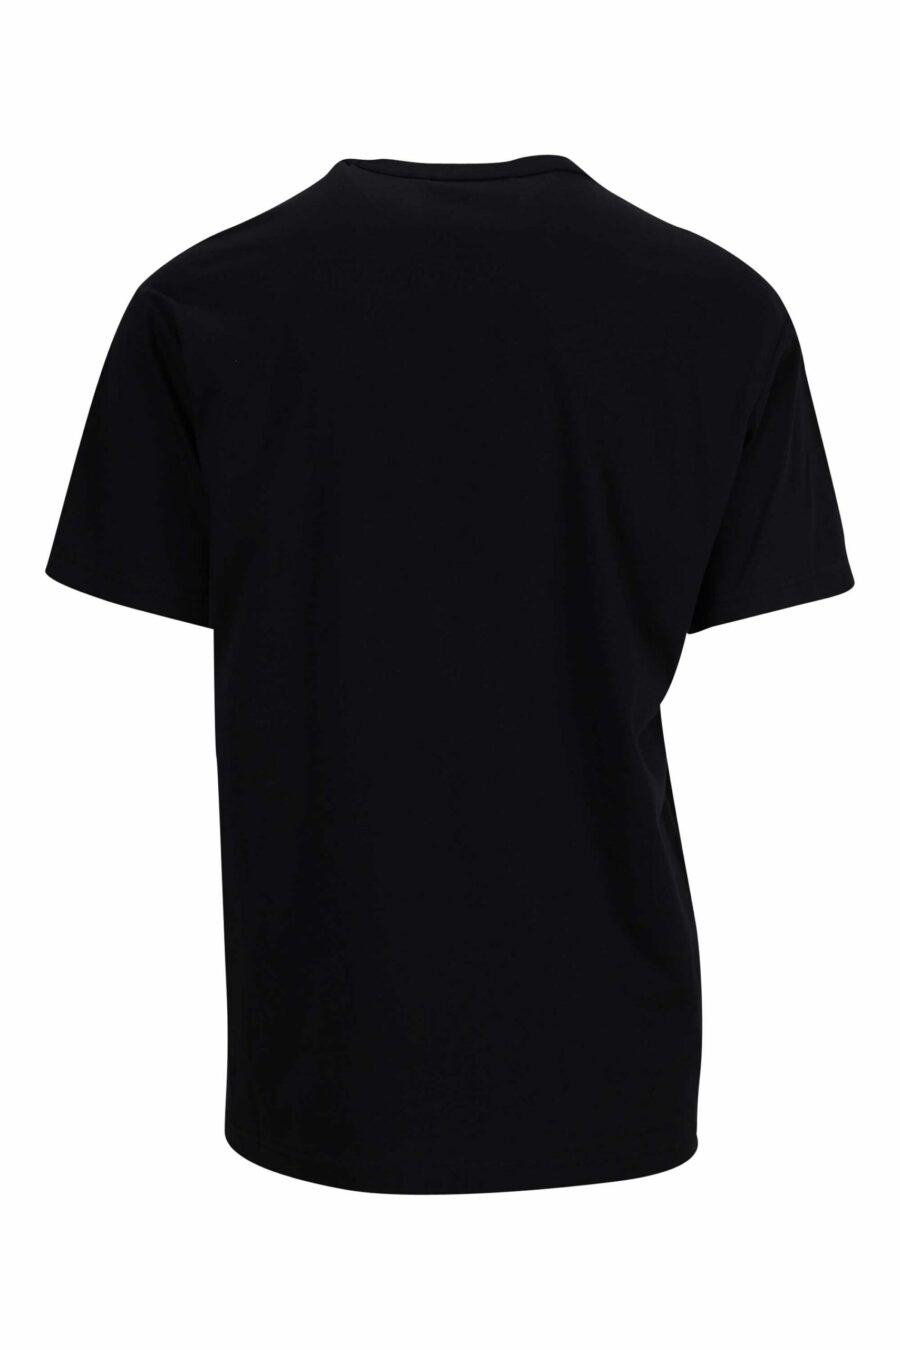 T-shirt preta com "emblema" maxilogo circular dourado - 8052019338058 1 à escala